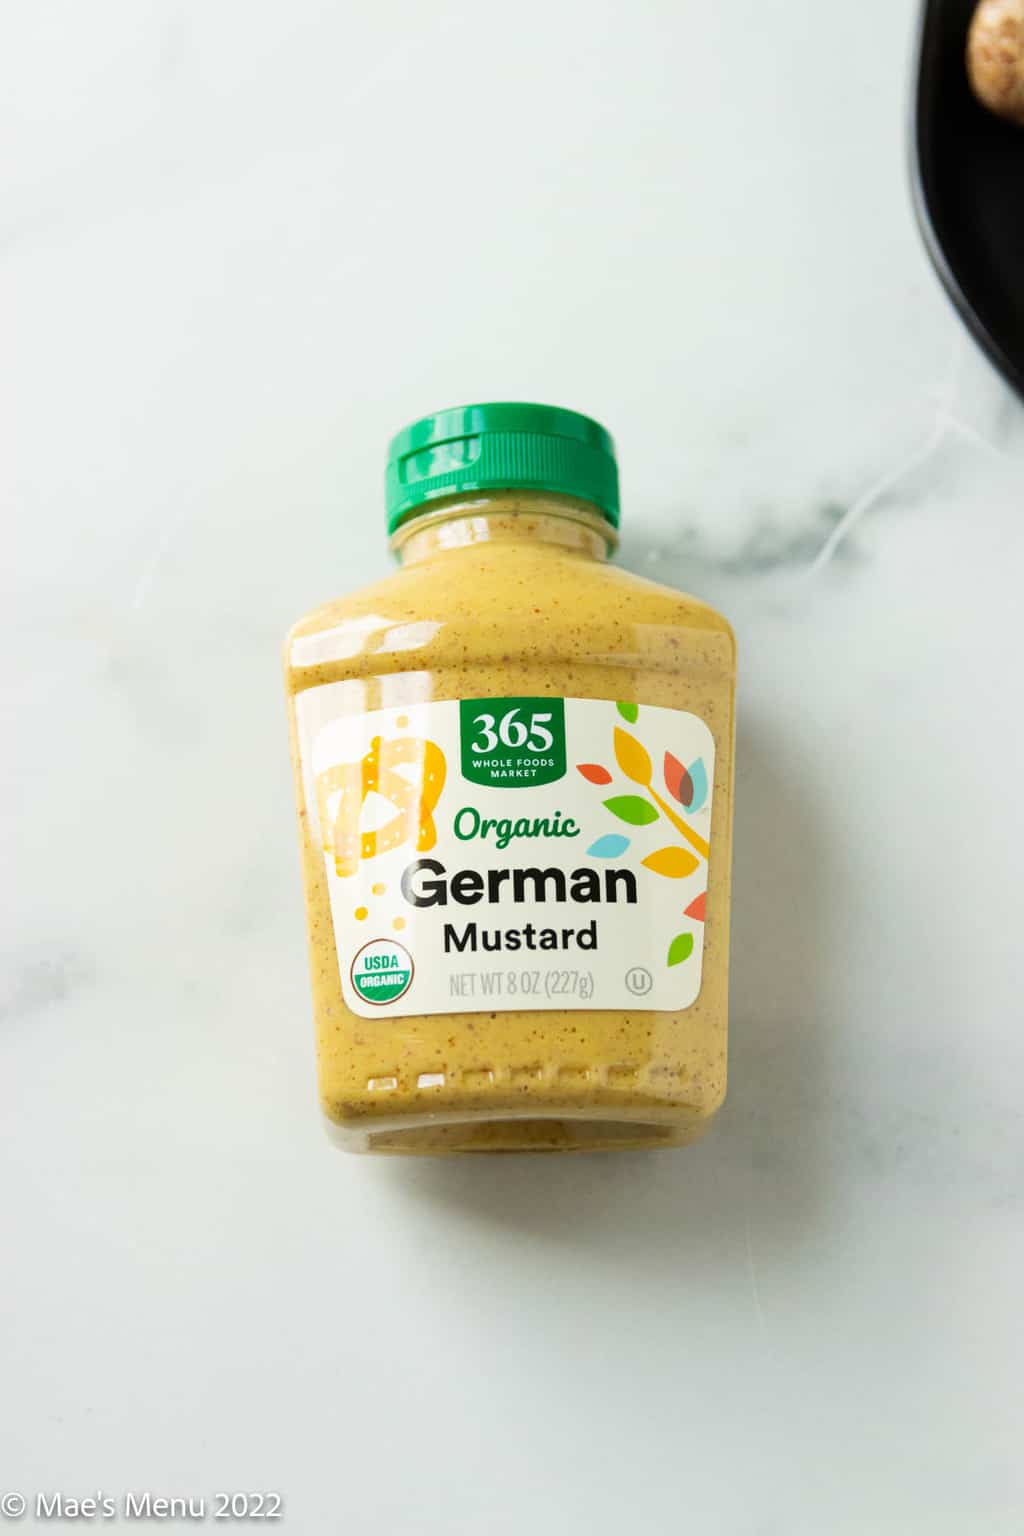 An up-close overhead shot of a bottle of organic German mustard.